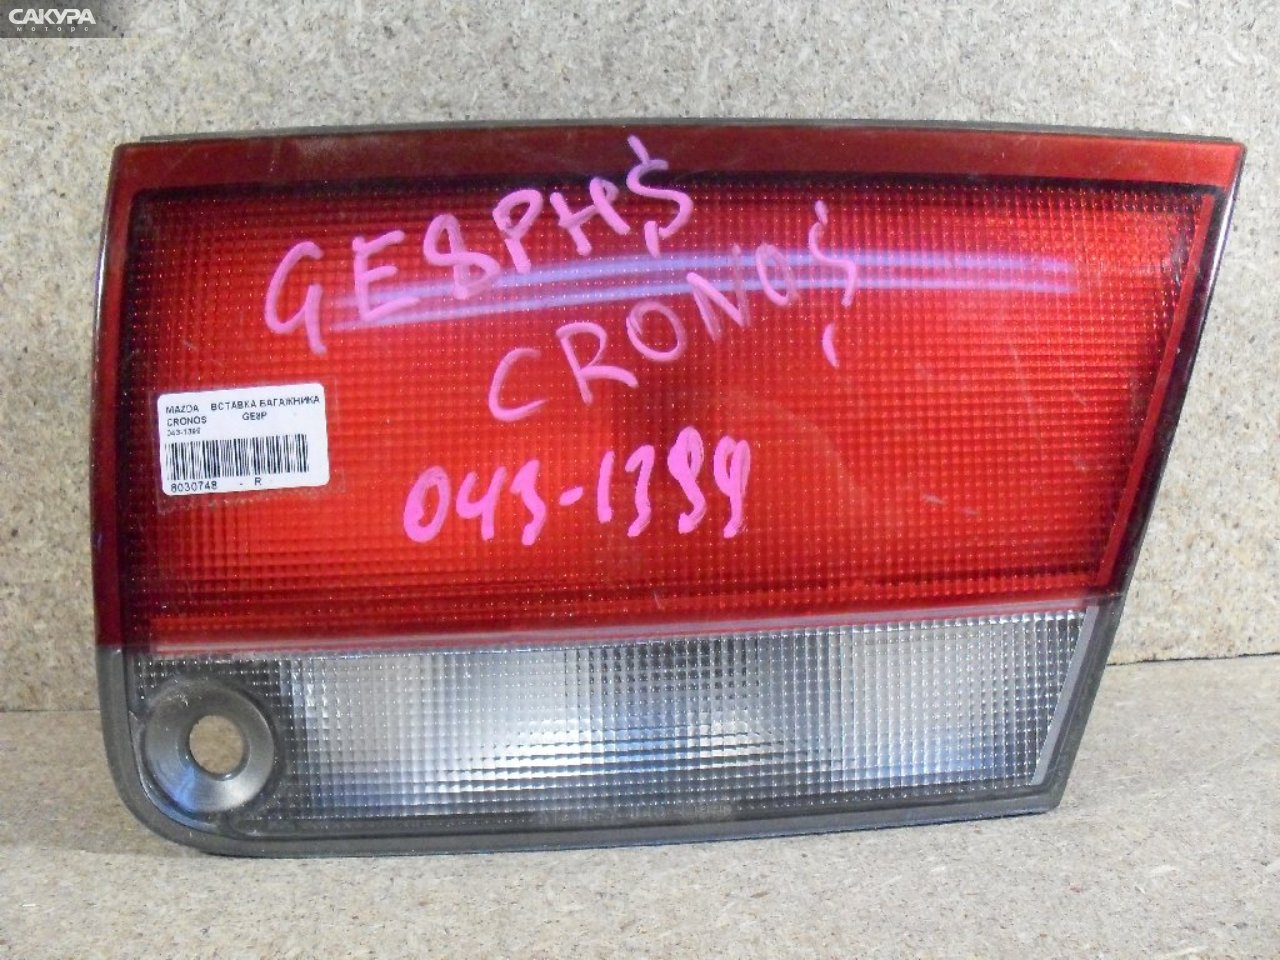 Фонарь вставка багажника правый Mazda Cronos GE8P 043-1399: купить в Сакура Абакан.